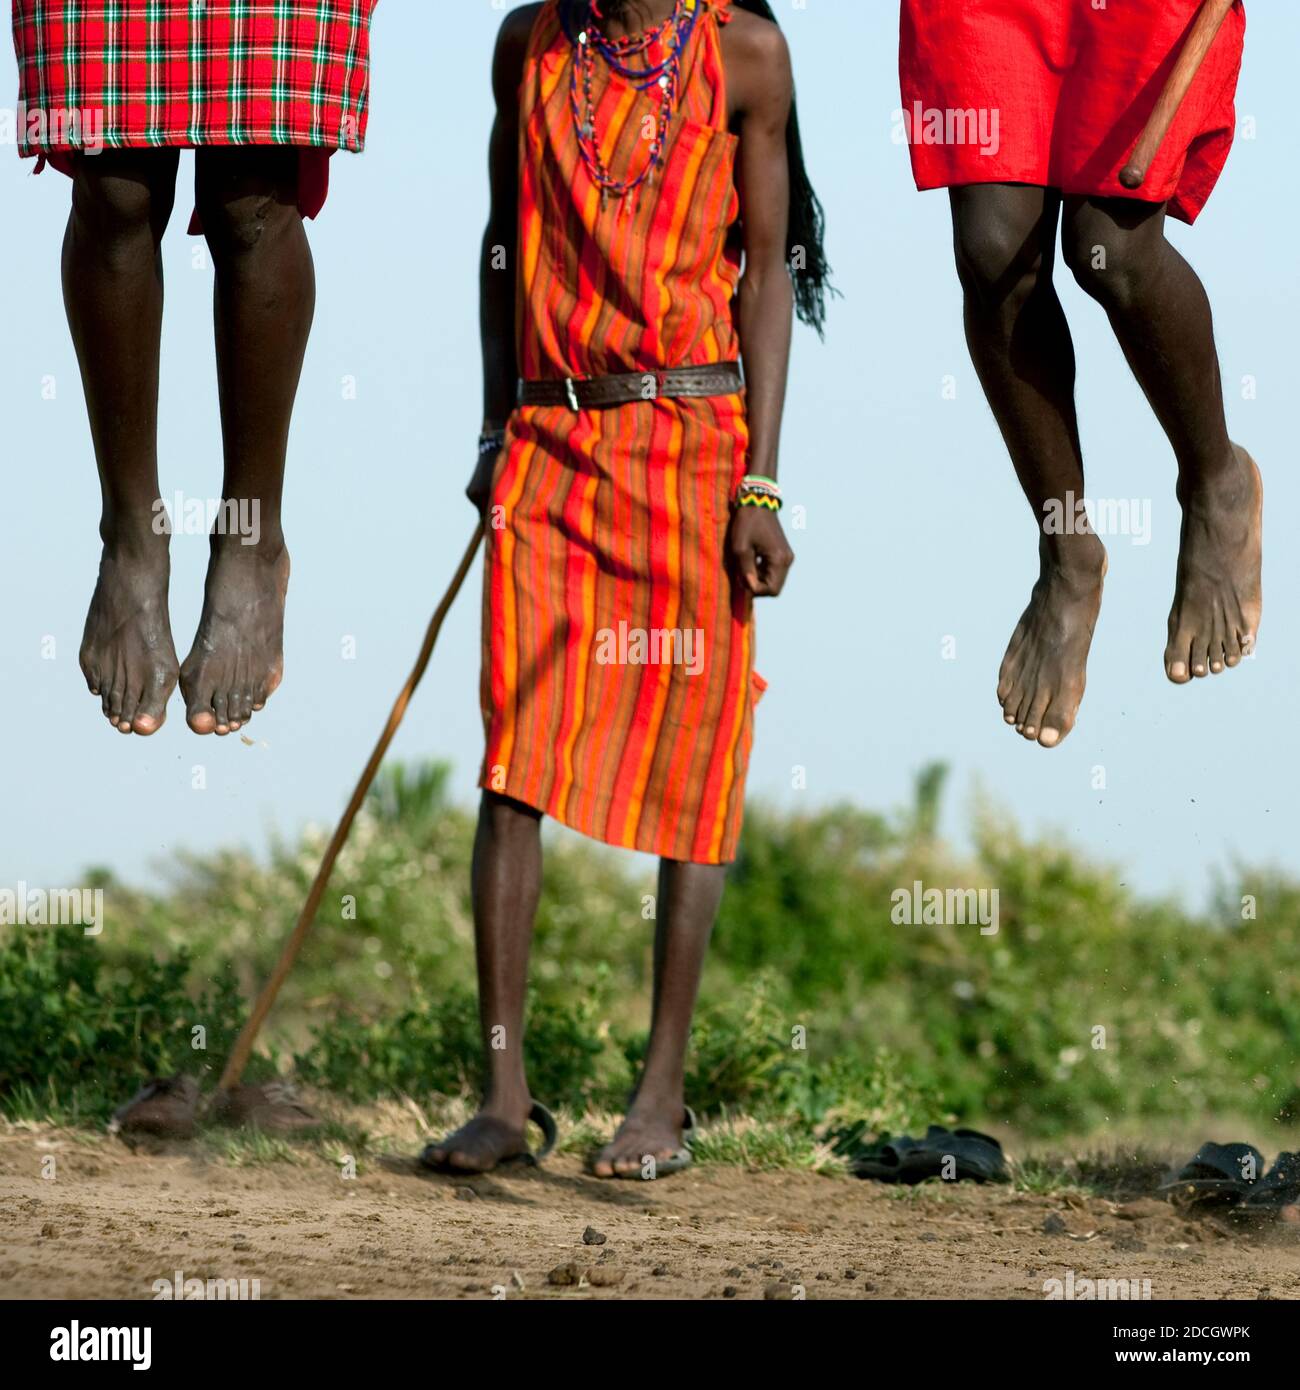 Maasai tribe men jumping during a ceremony, Rift Valley Province, Maasai Mara, Kenya Stock Photo